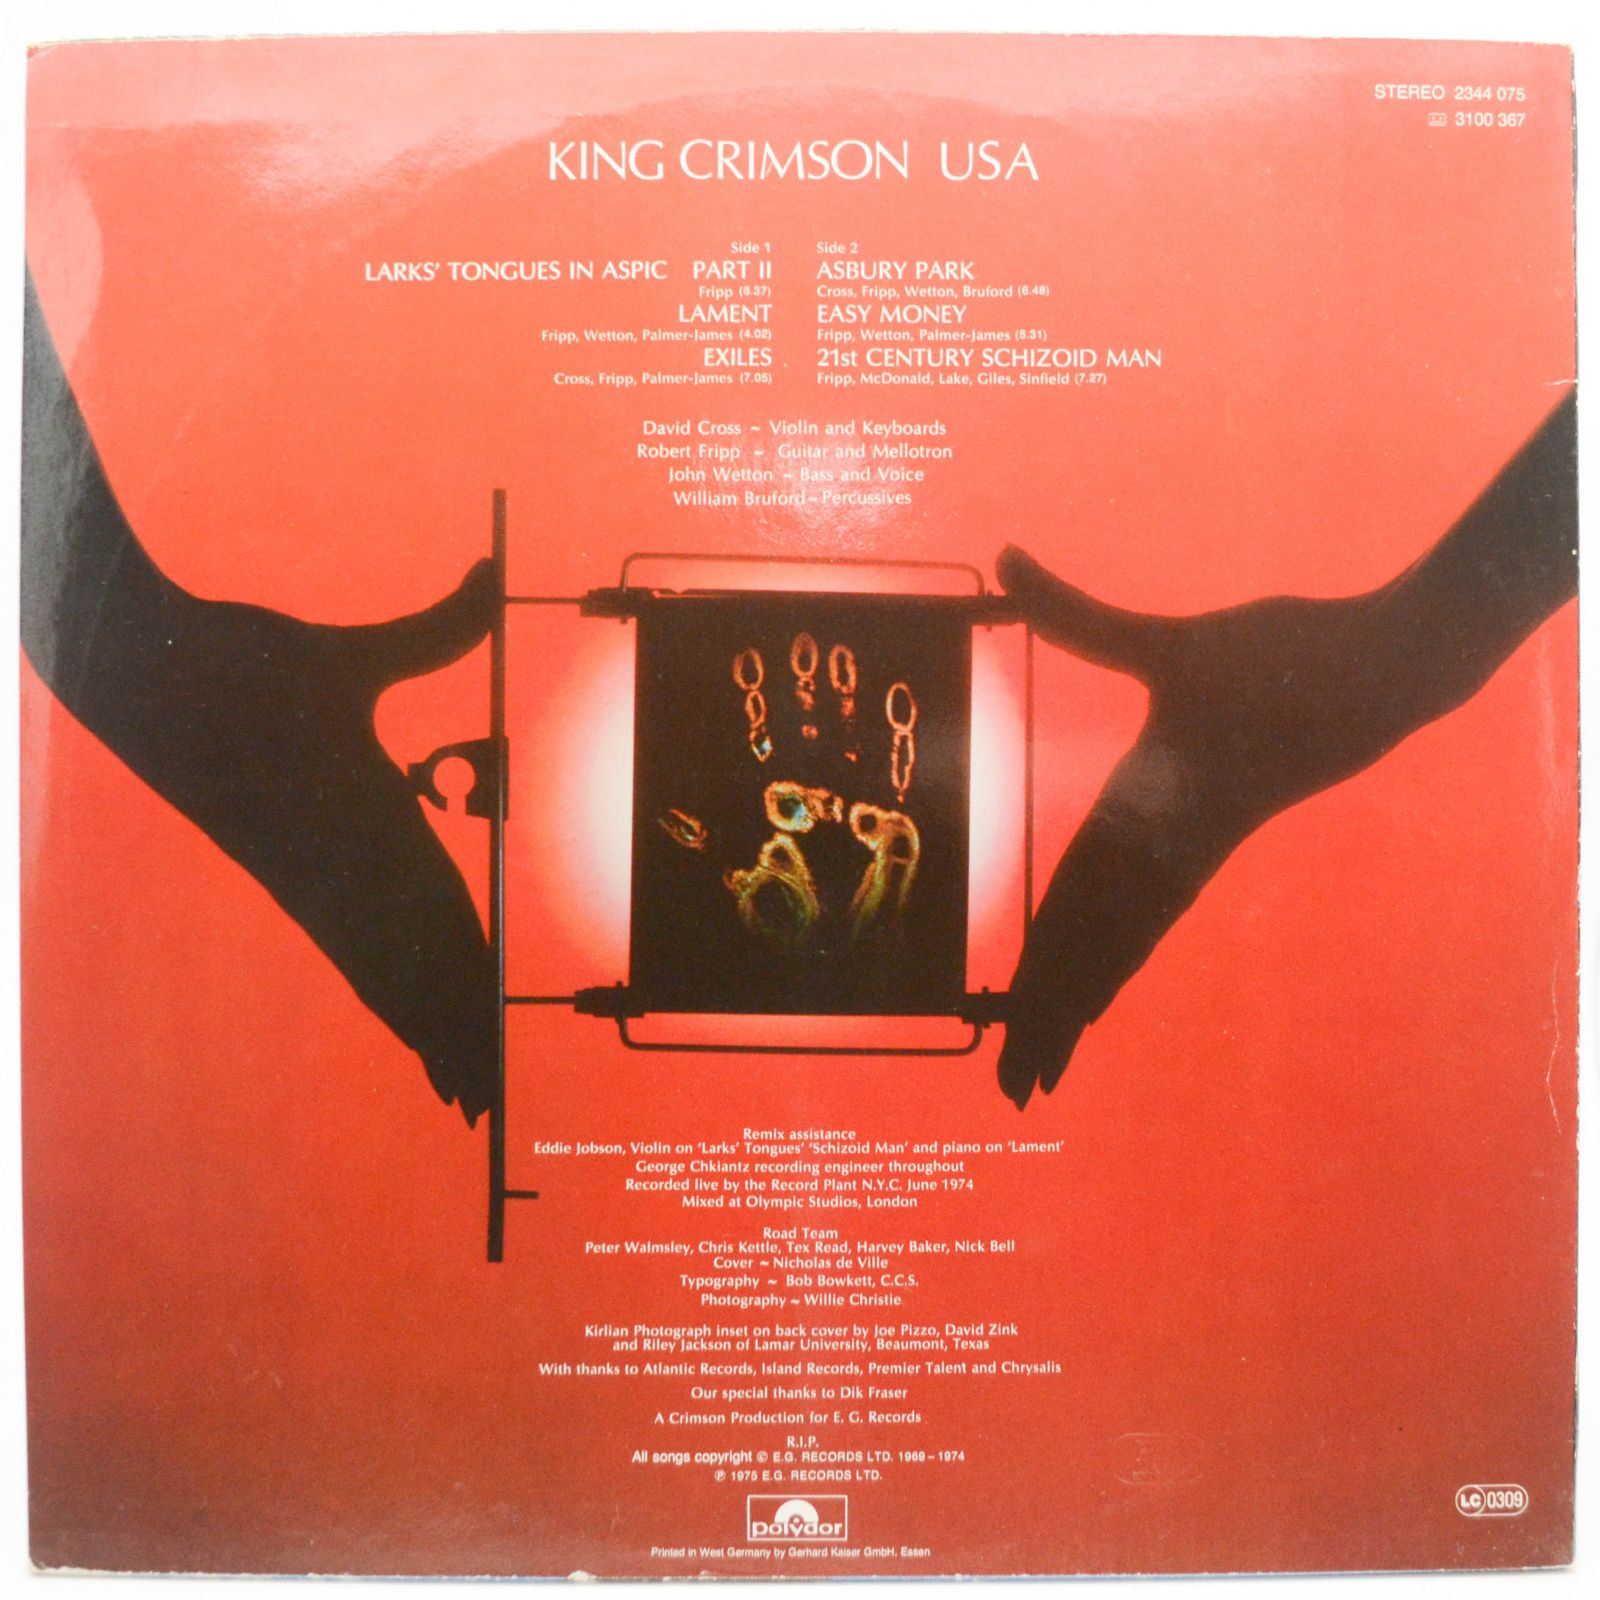 King Crimson — USA, 1977